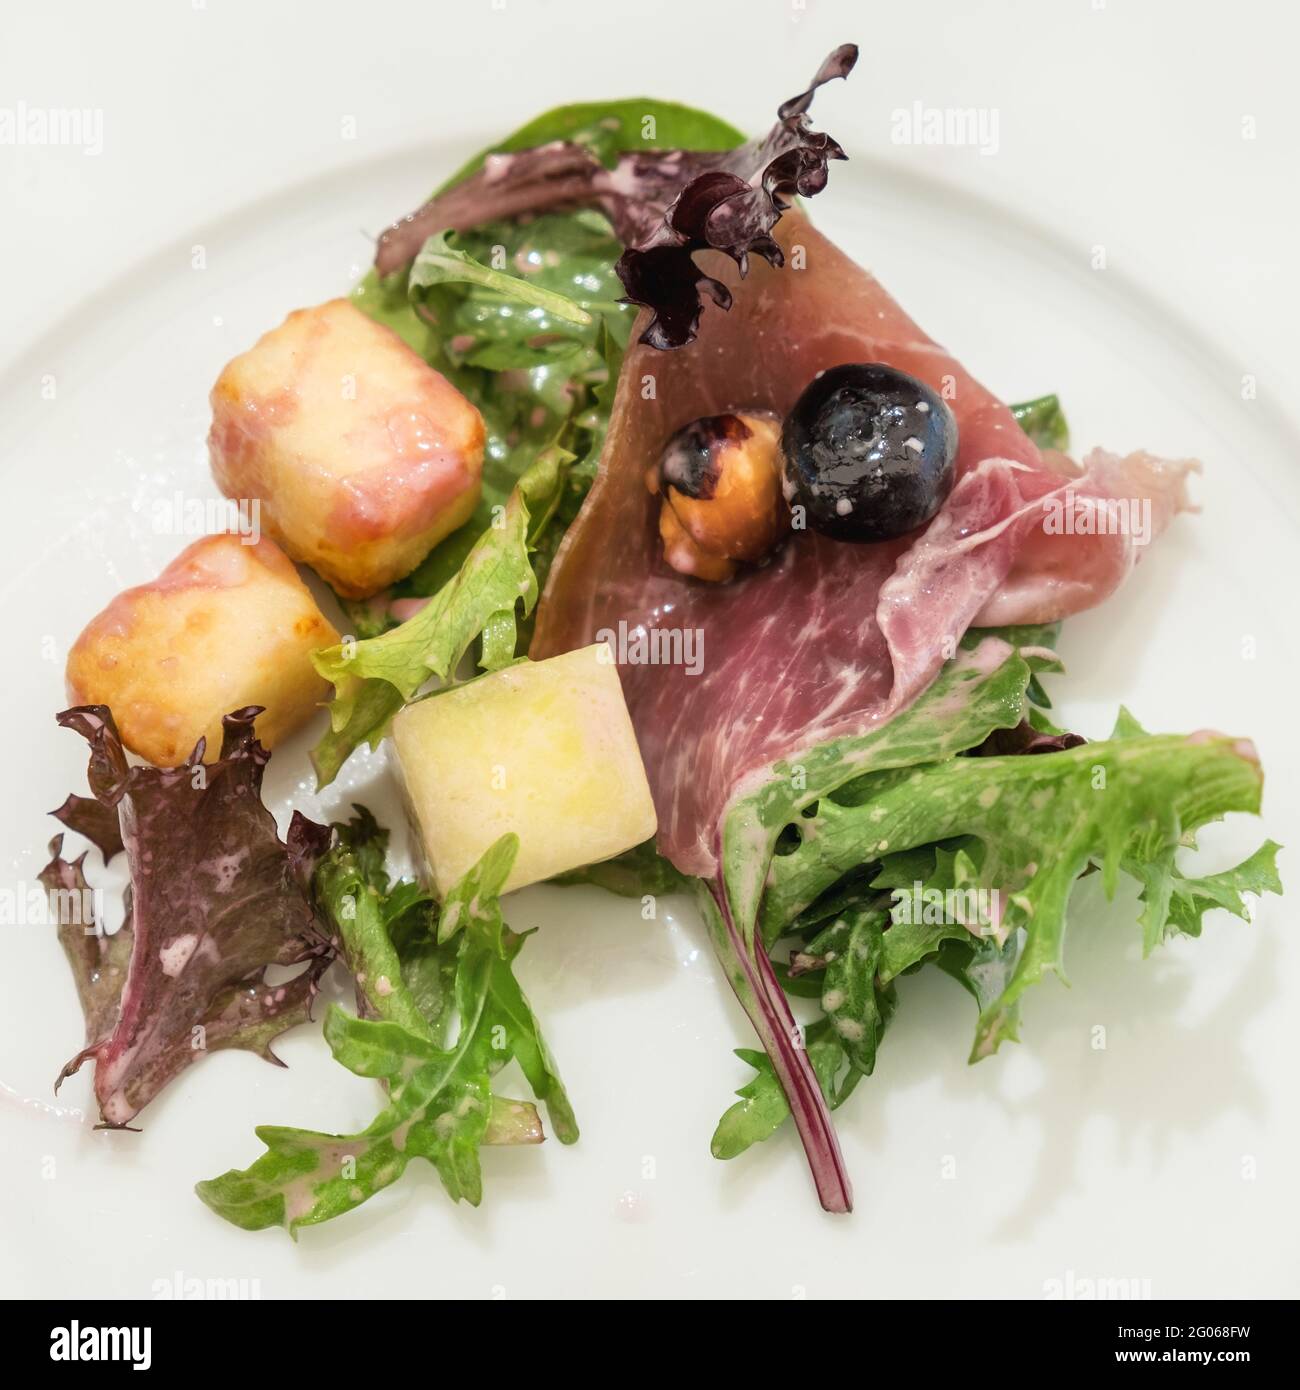 Piccola quantità di insalata con prosciutto, formaggio alloumi arrosto e insalata verde su piatto bianco. Foto Stock